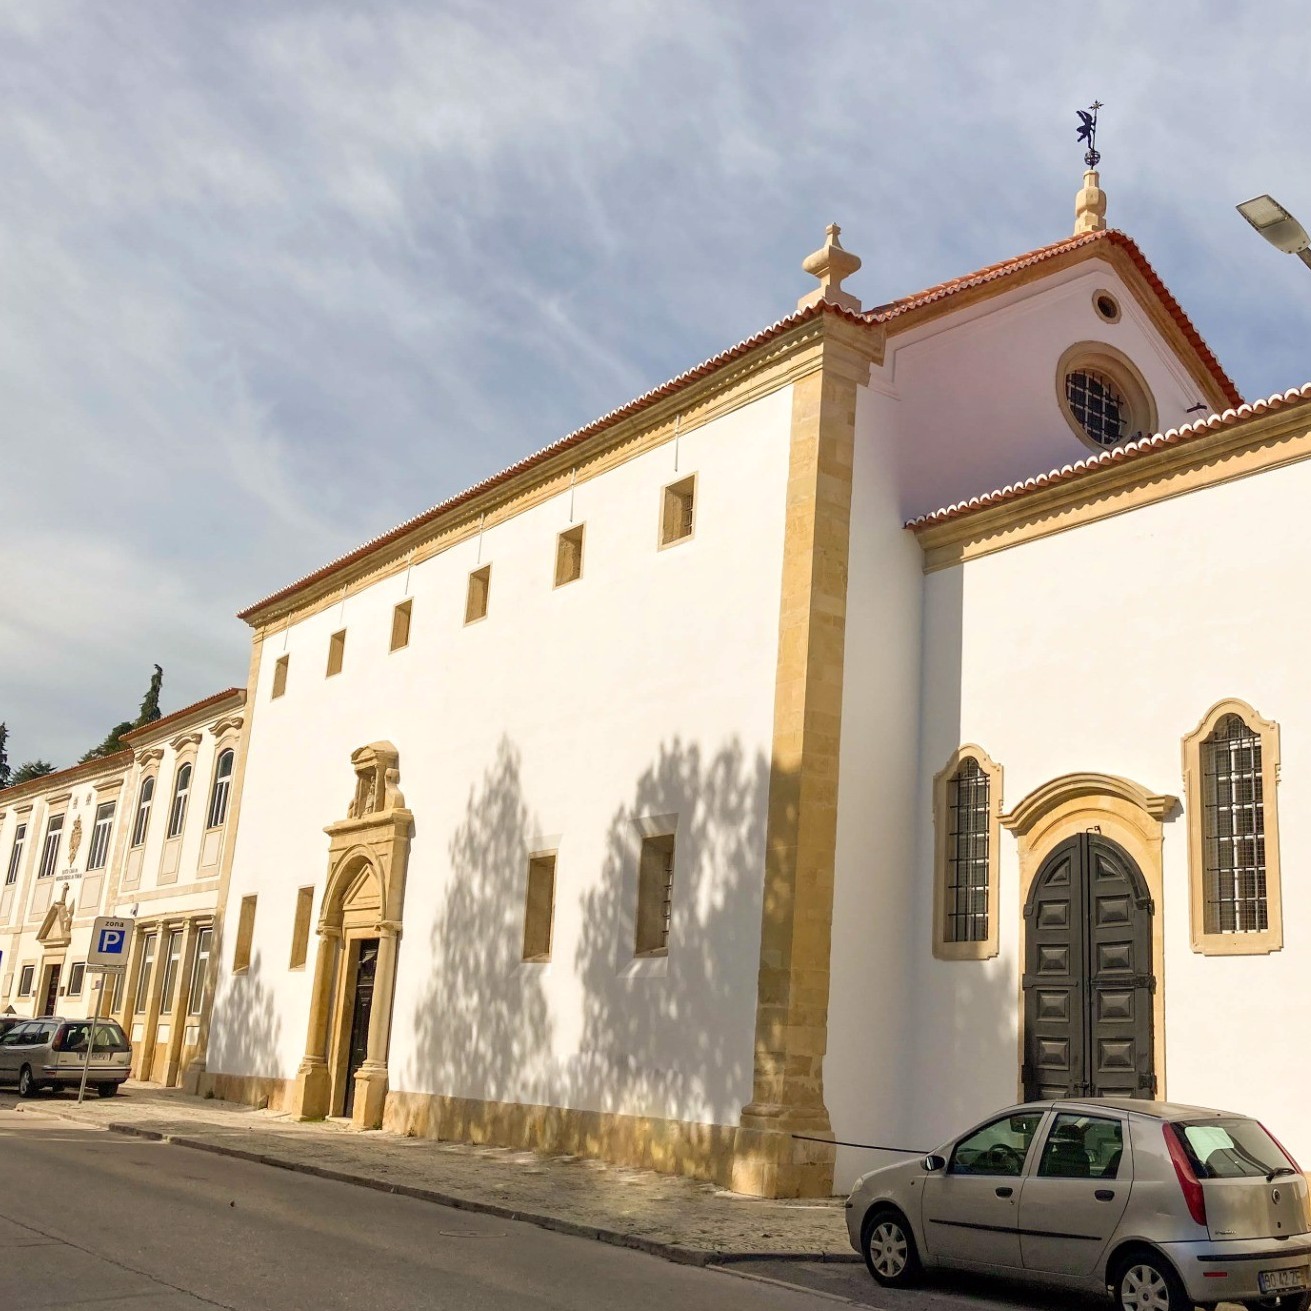 Enquadramento - também conhecida como Igreja da Misericórdia. A Santa Casa da Misericórdia de Tomar foi estabelecida pelo Rei D. Manuel I, no ano de 1510, sendo-lhe anexado o Hospital de Nossa Senhora da Graça.